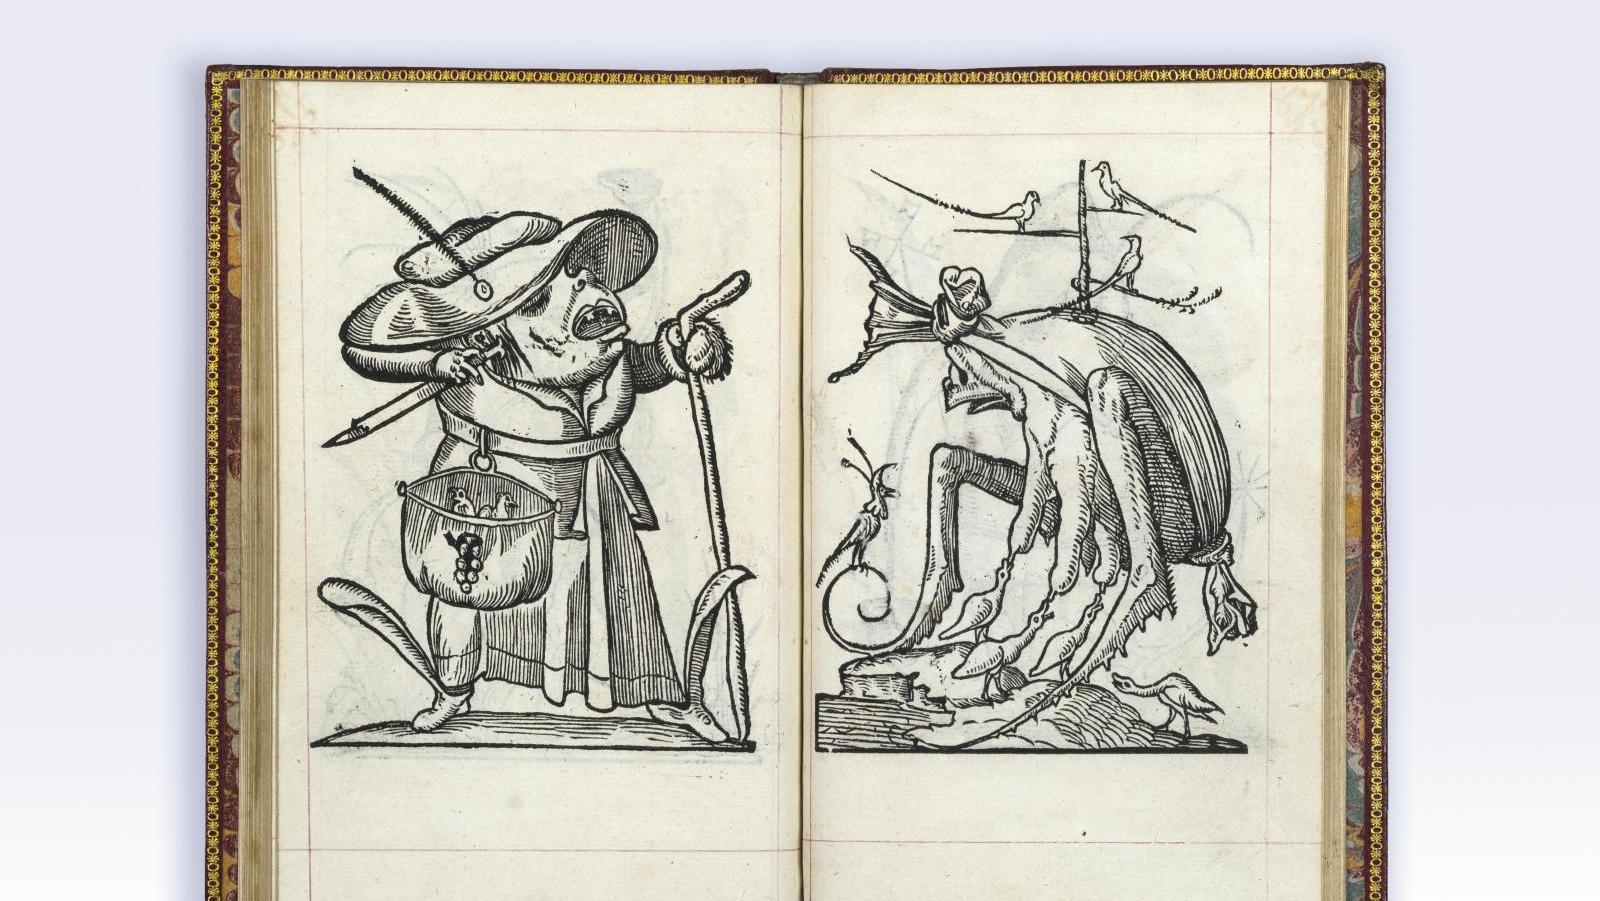 François Rabelais (1494-1553), Les Songes drolatiques de Pantagruel, où sont contenues... Les songes drolatiques de Rabelais